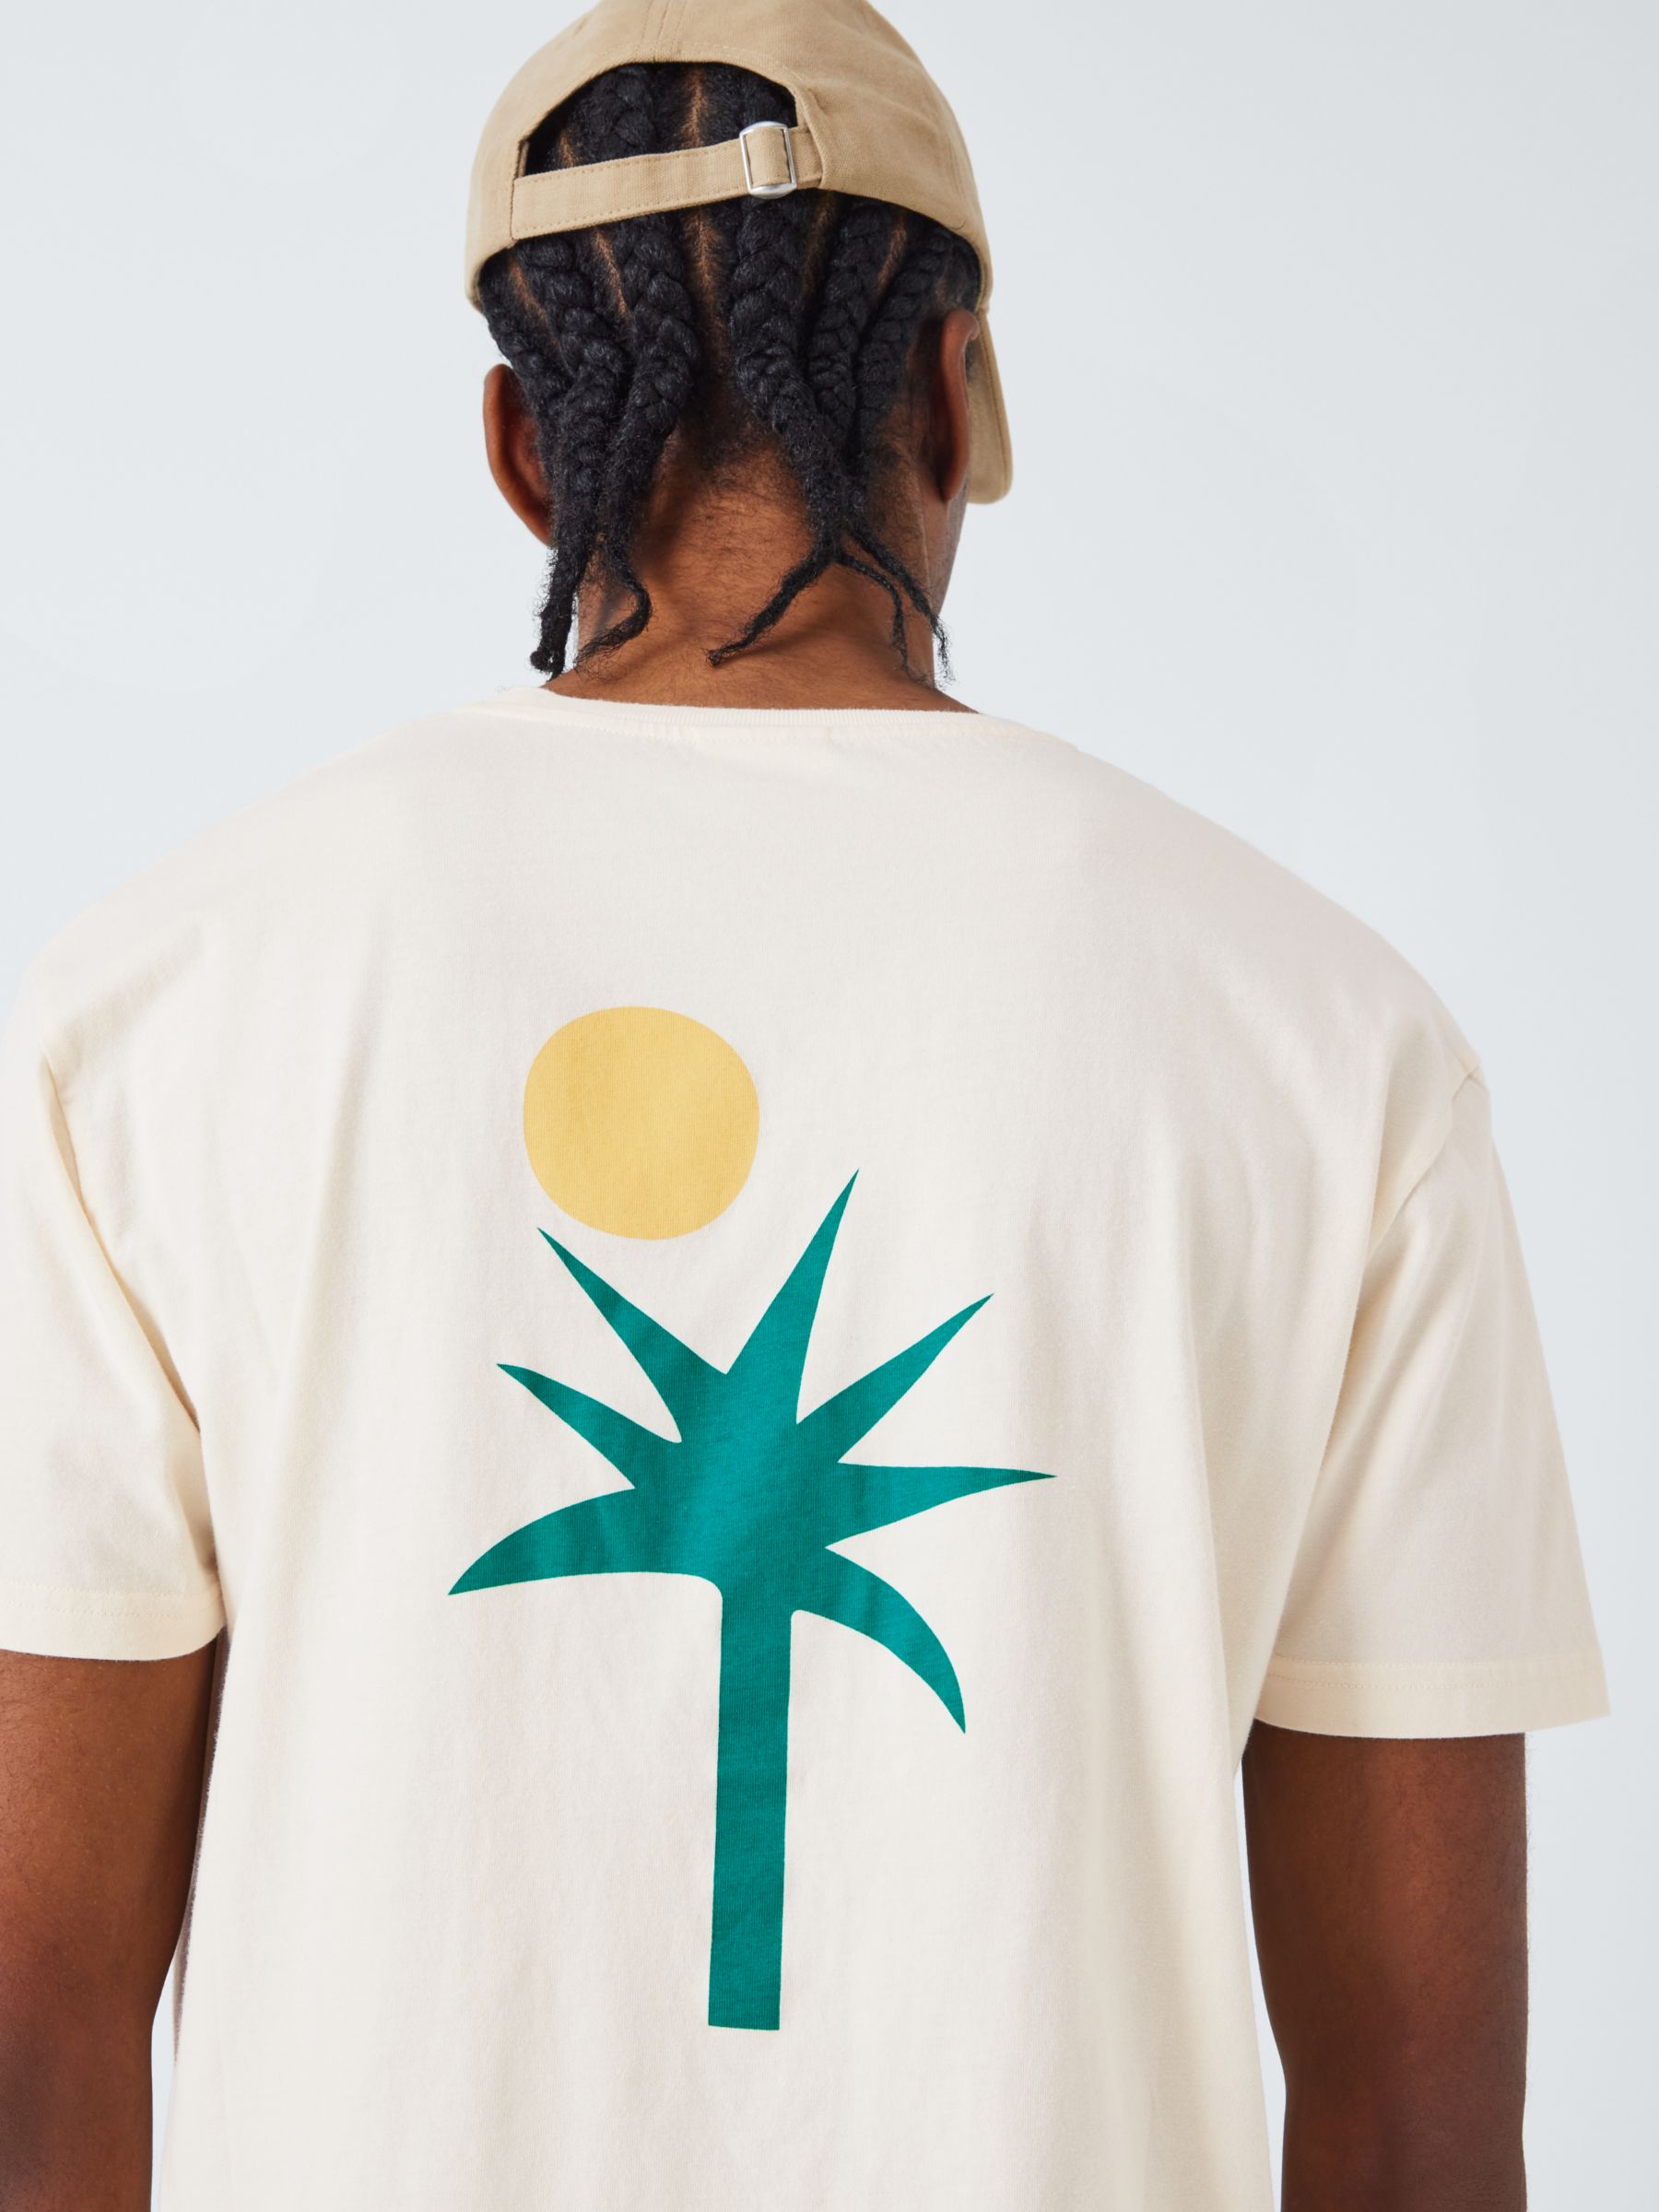 La Paz Print T-Shirt, Palm Ecru, S